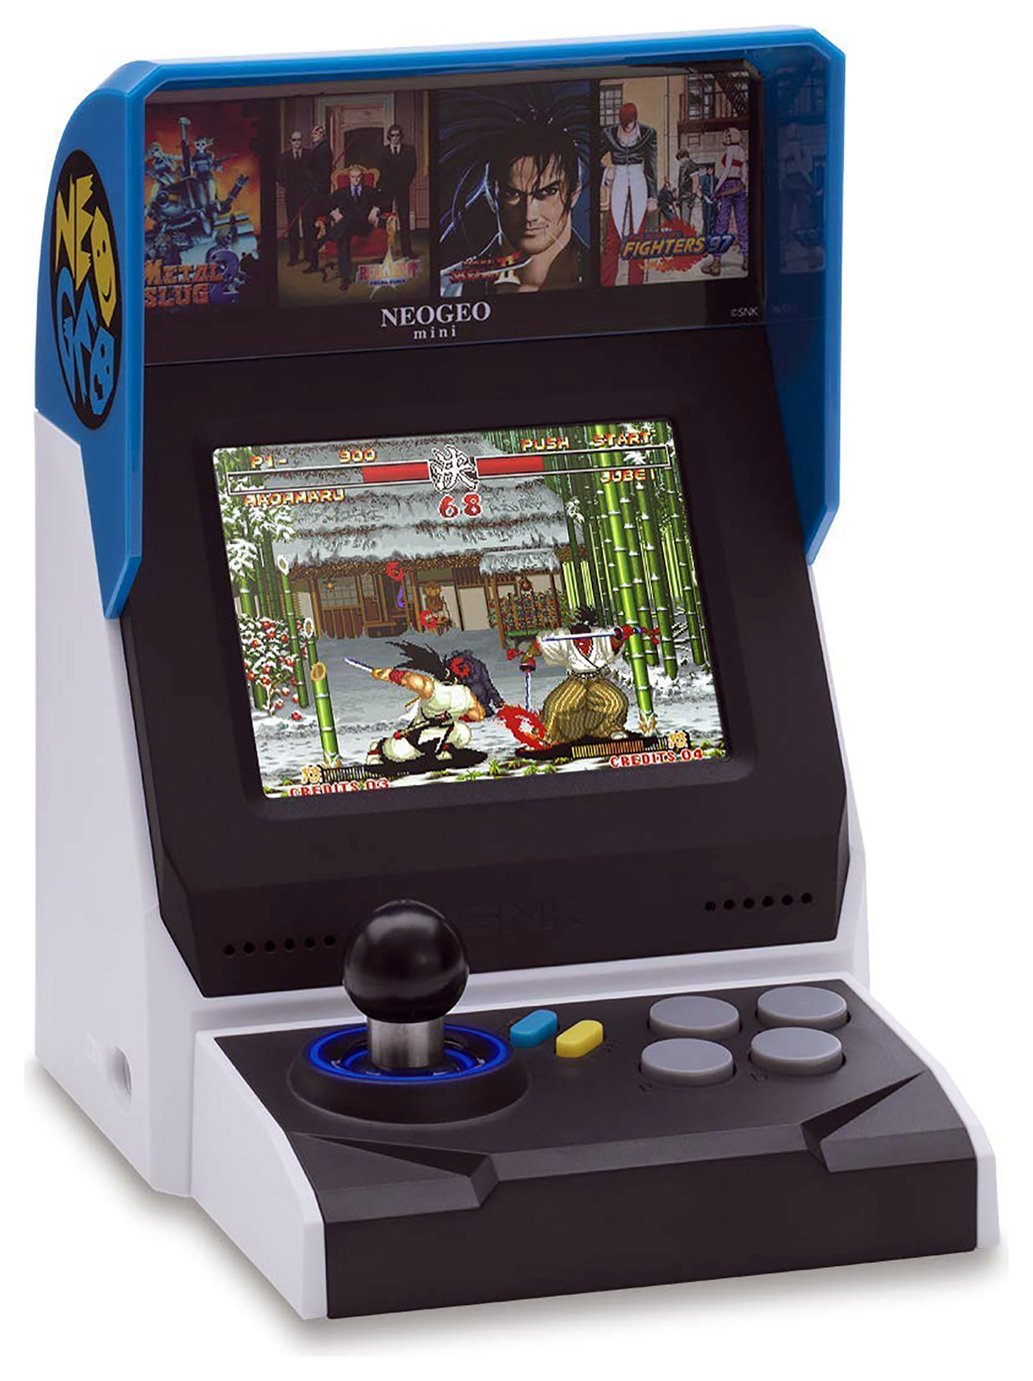 Neo Geo Mini Price